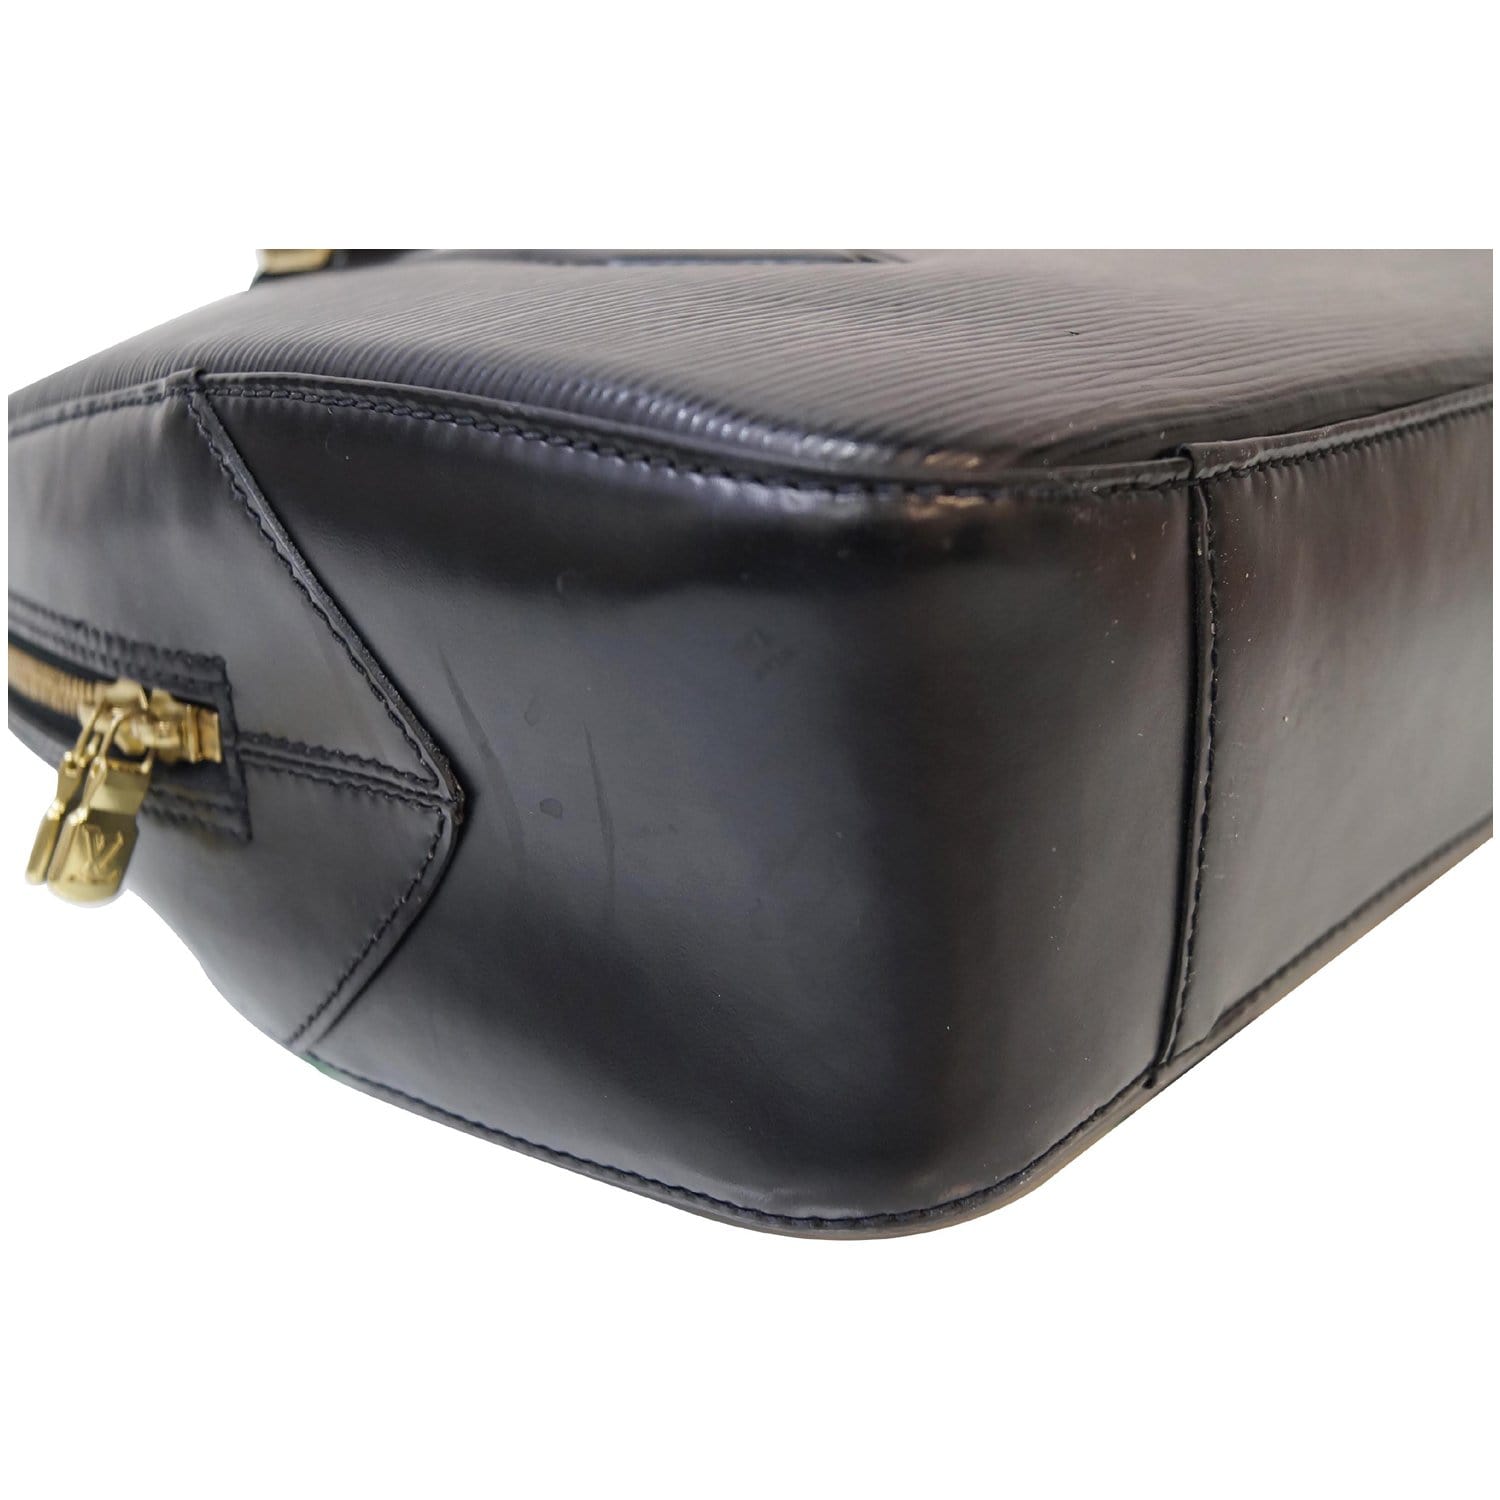 LOUIS VUITTON LV Voltaire Shoulder Bag Epi Leather Black Gold M52432 65BX703